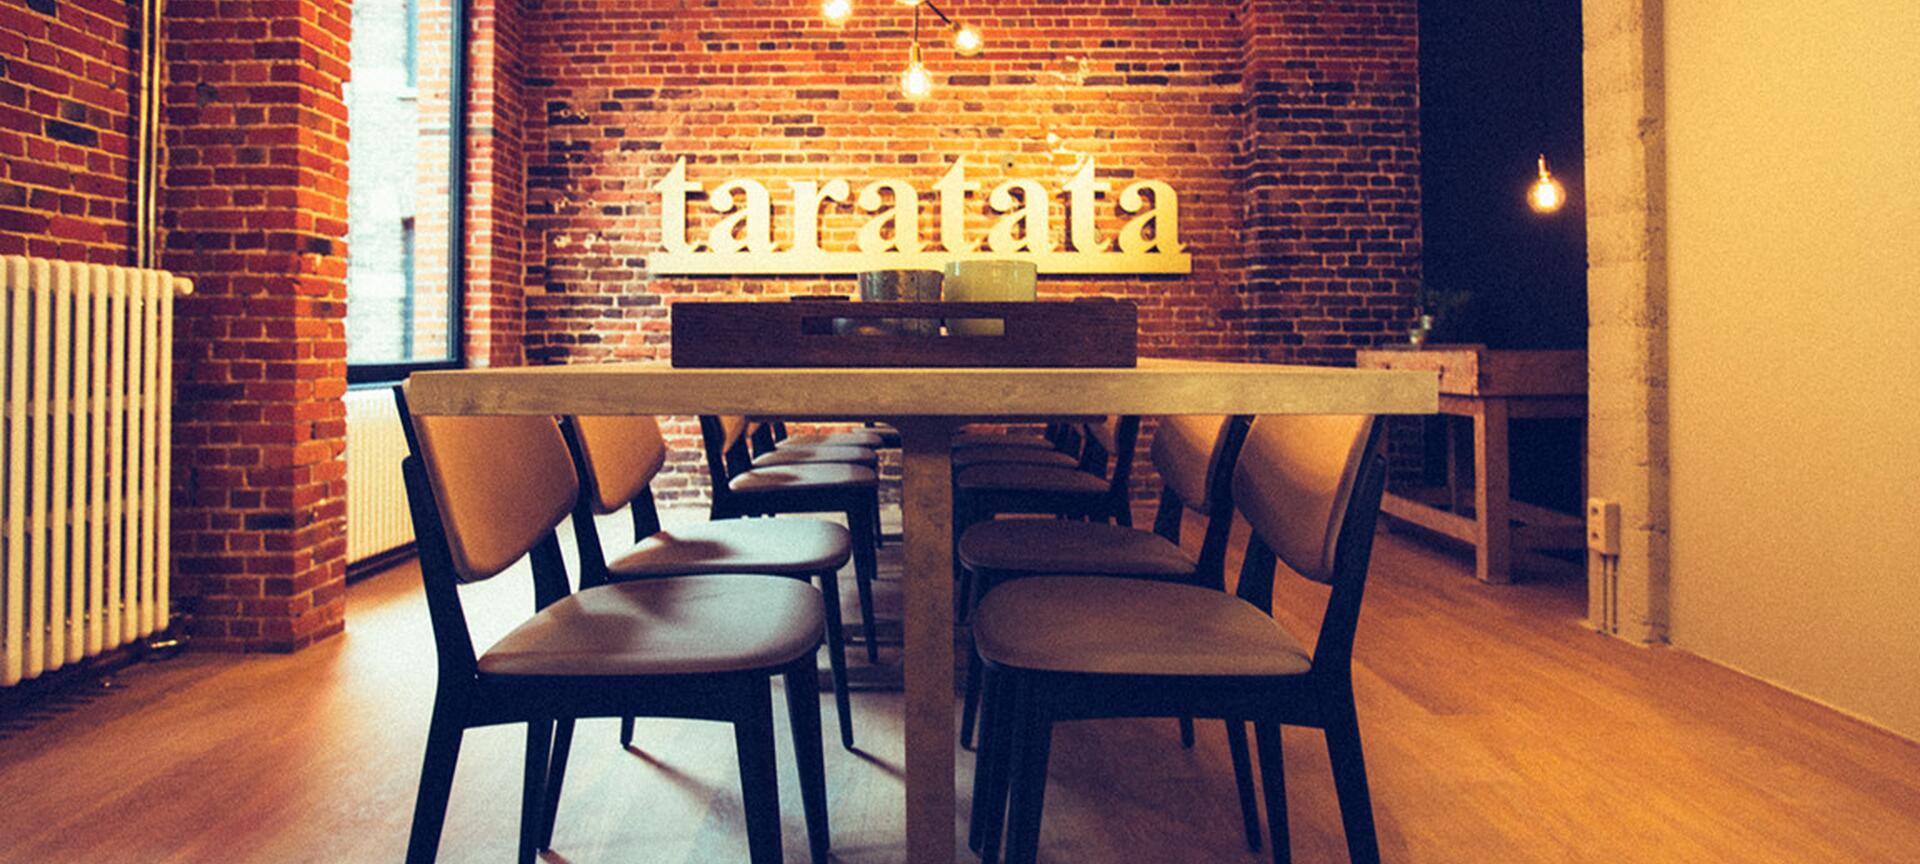 Taratata - Chef's Table